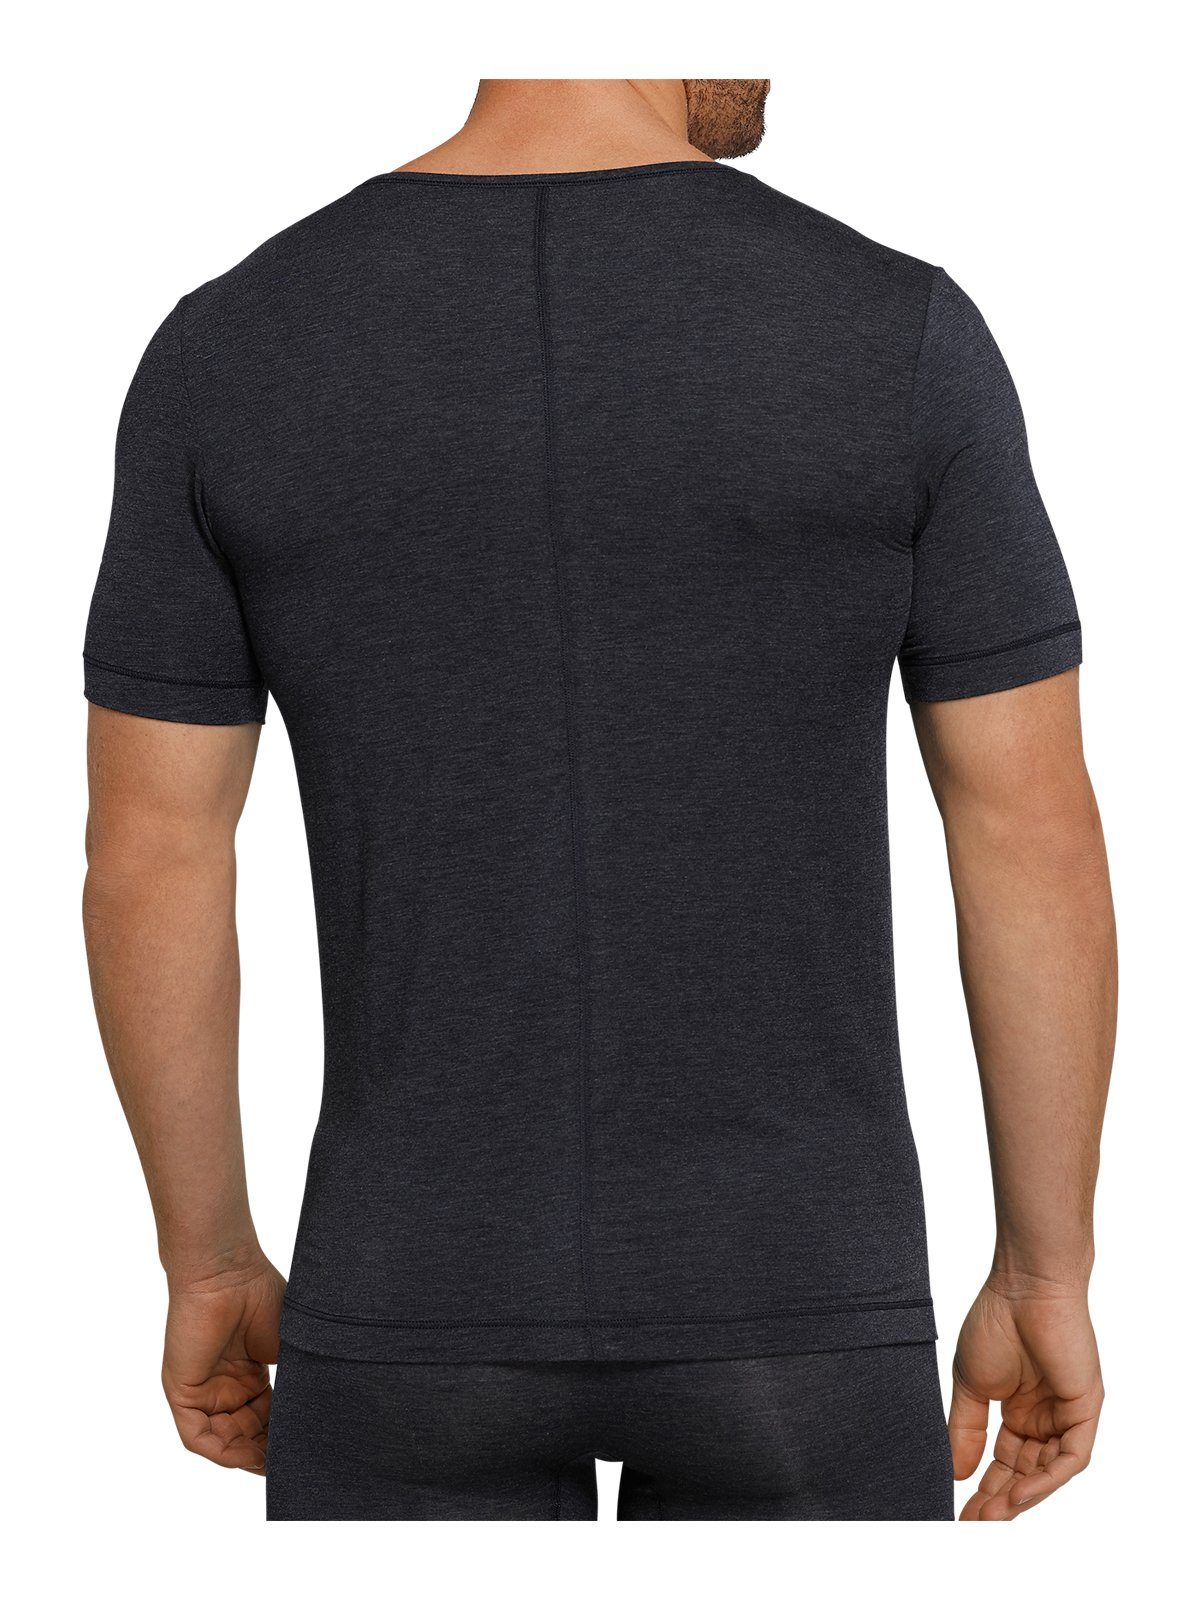 Schiesser Unterziehshirt »Schiesser Personal Fit V-Neck Shirt« (1 Stück)  online kaufen | OTTO